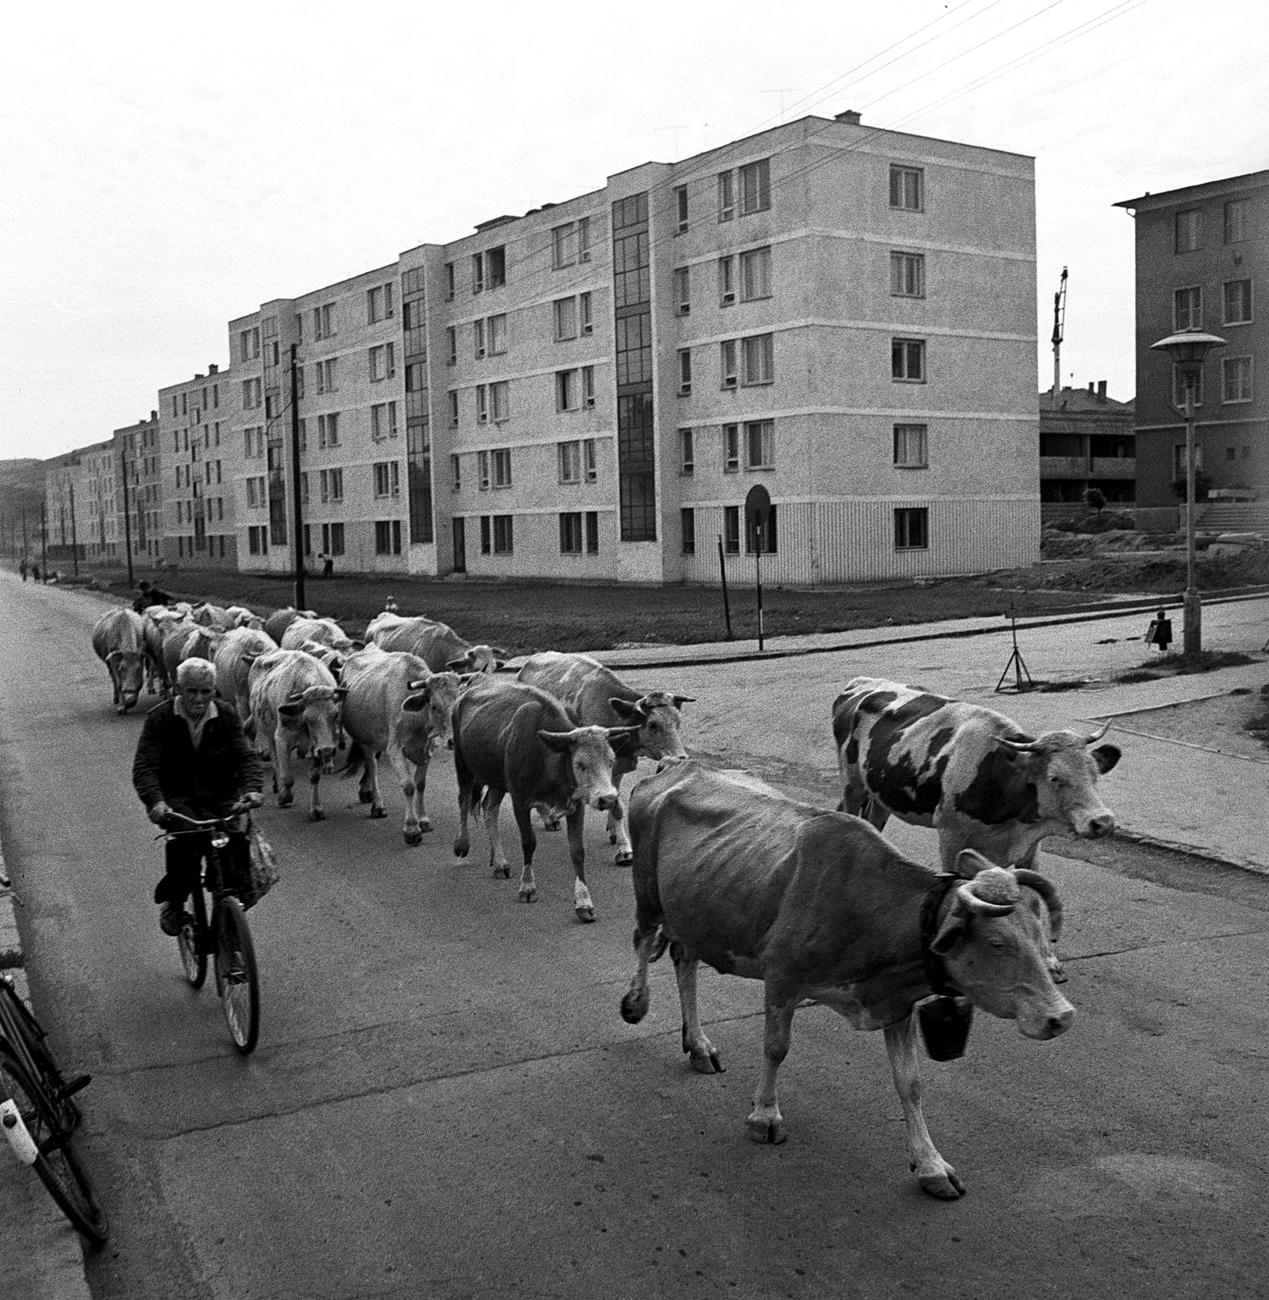 Még járt a csorda a legelőre, de már állt az új lakótelep 1966 augusztusában Ózdon, a szocialista nehézipar egyik fellegvárában. A tehenek feltűnően soványak, viszonylag kevesen vannak, a lakótelep mögött felsejlő kertes házakból jöhetnek. A családi 